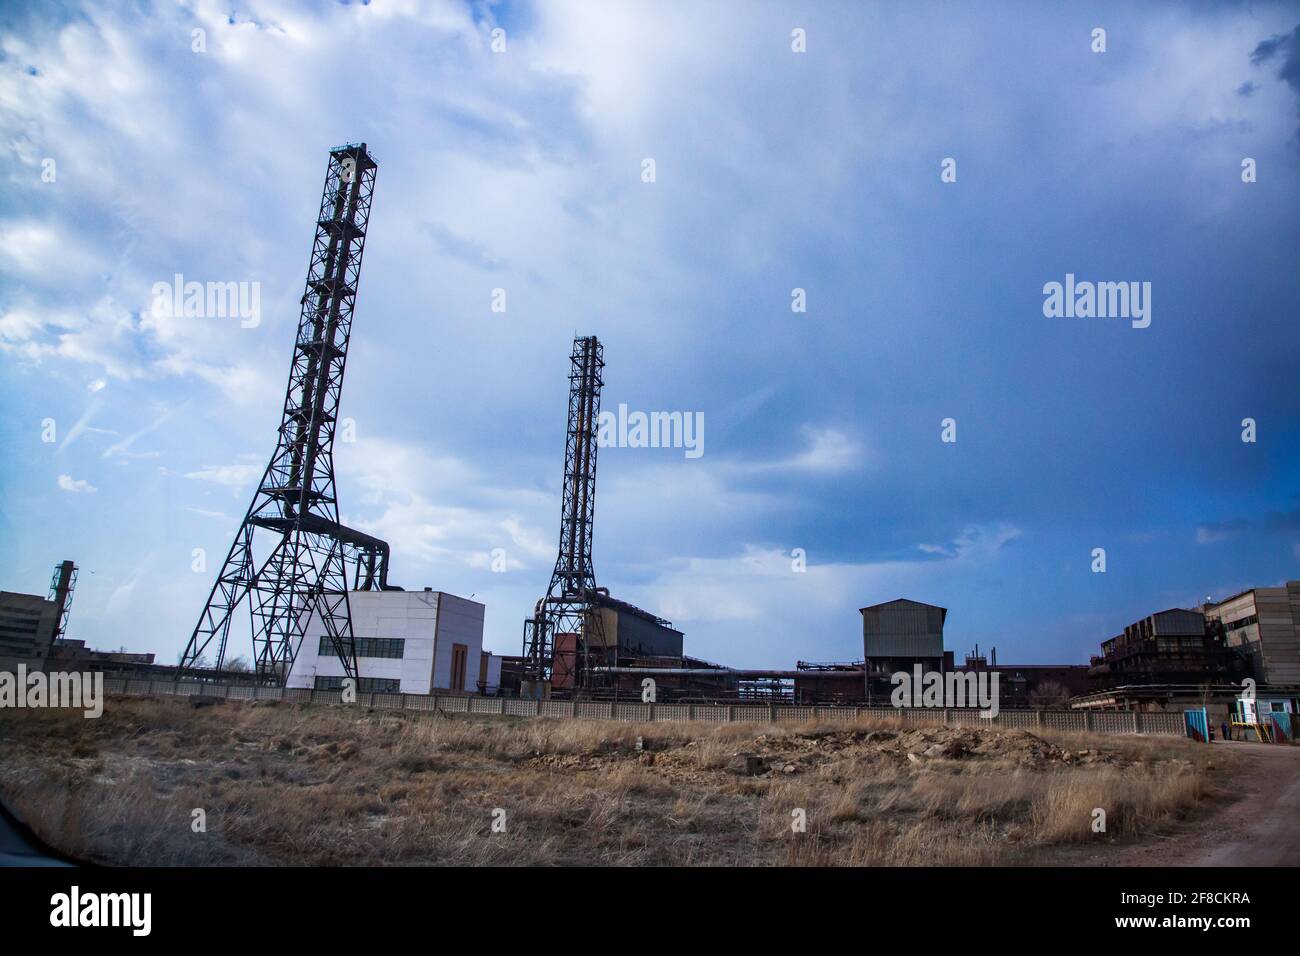 Des chmneys démodés de l'usine soviétique sur fond bleu ciel. Banque D'Images